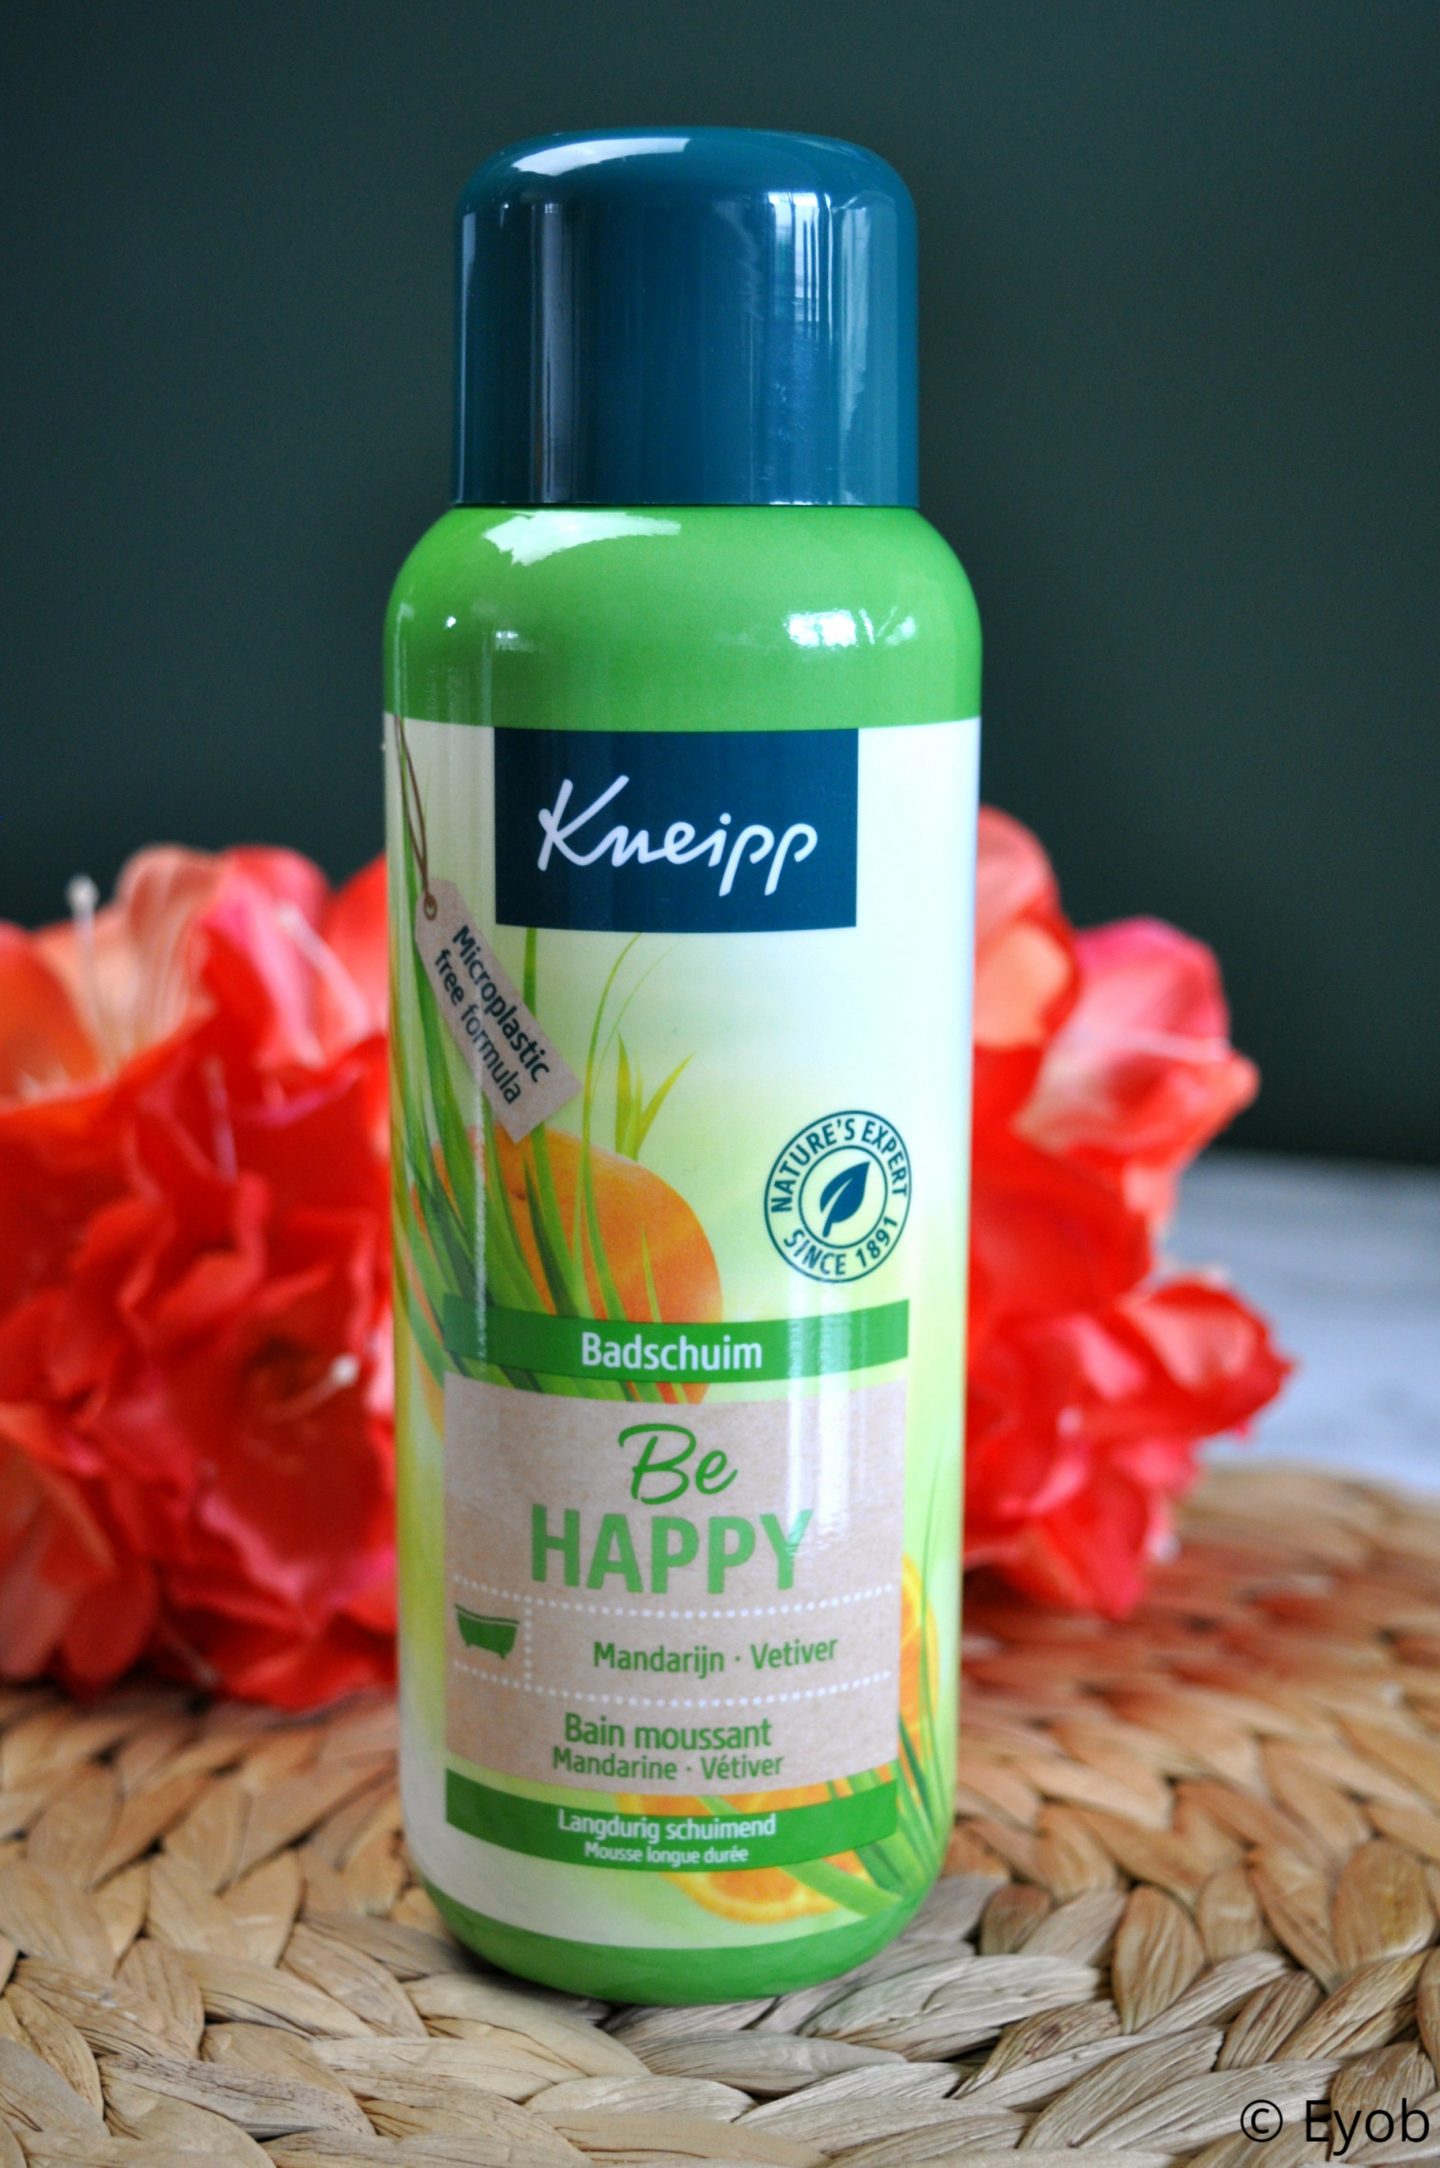 Kneipp Be Happy